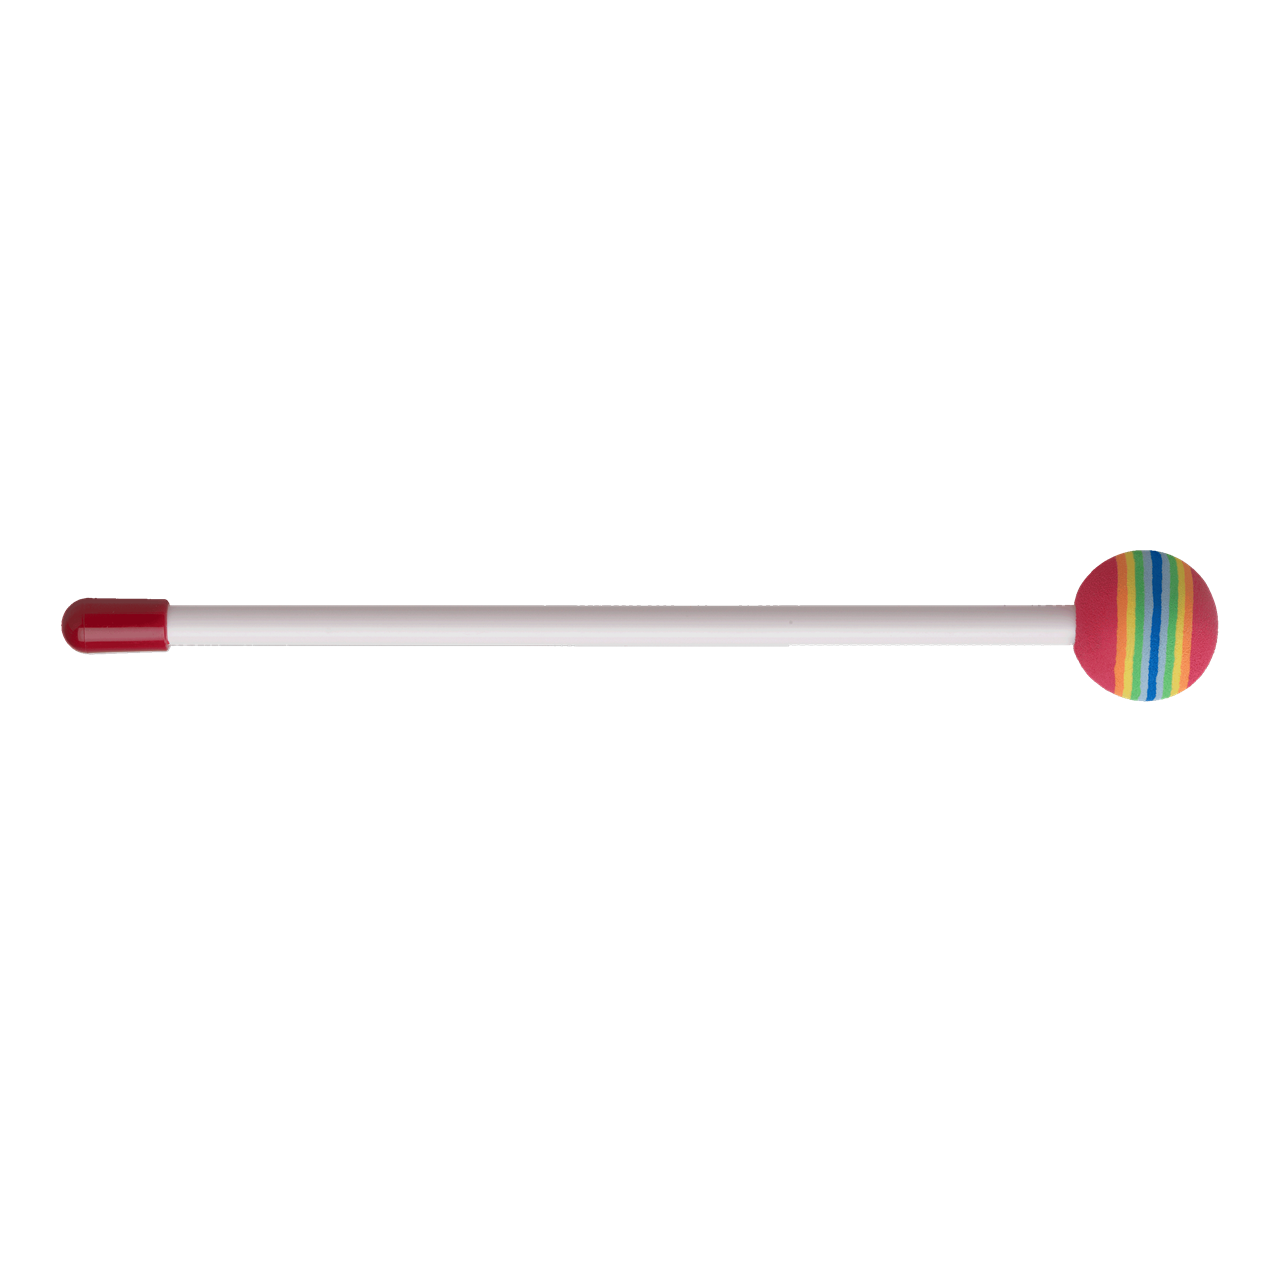 Remo Lollipop Drum Mallet, 8" (20 cm)